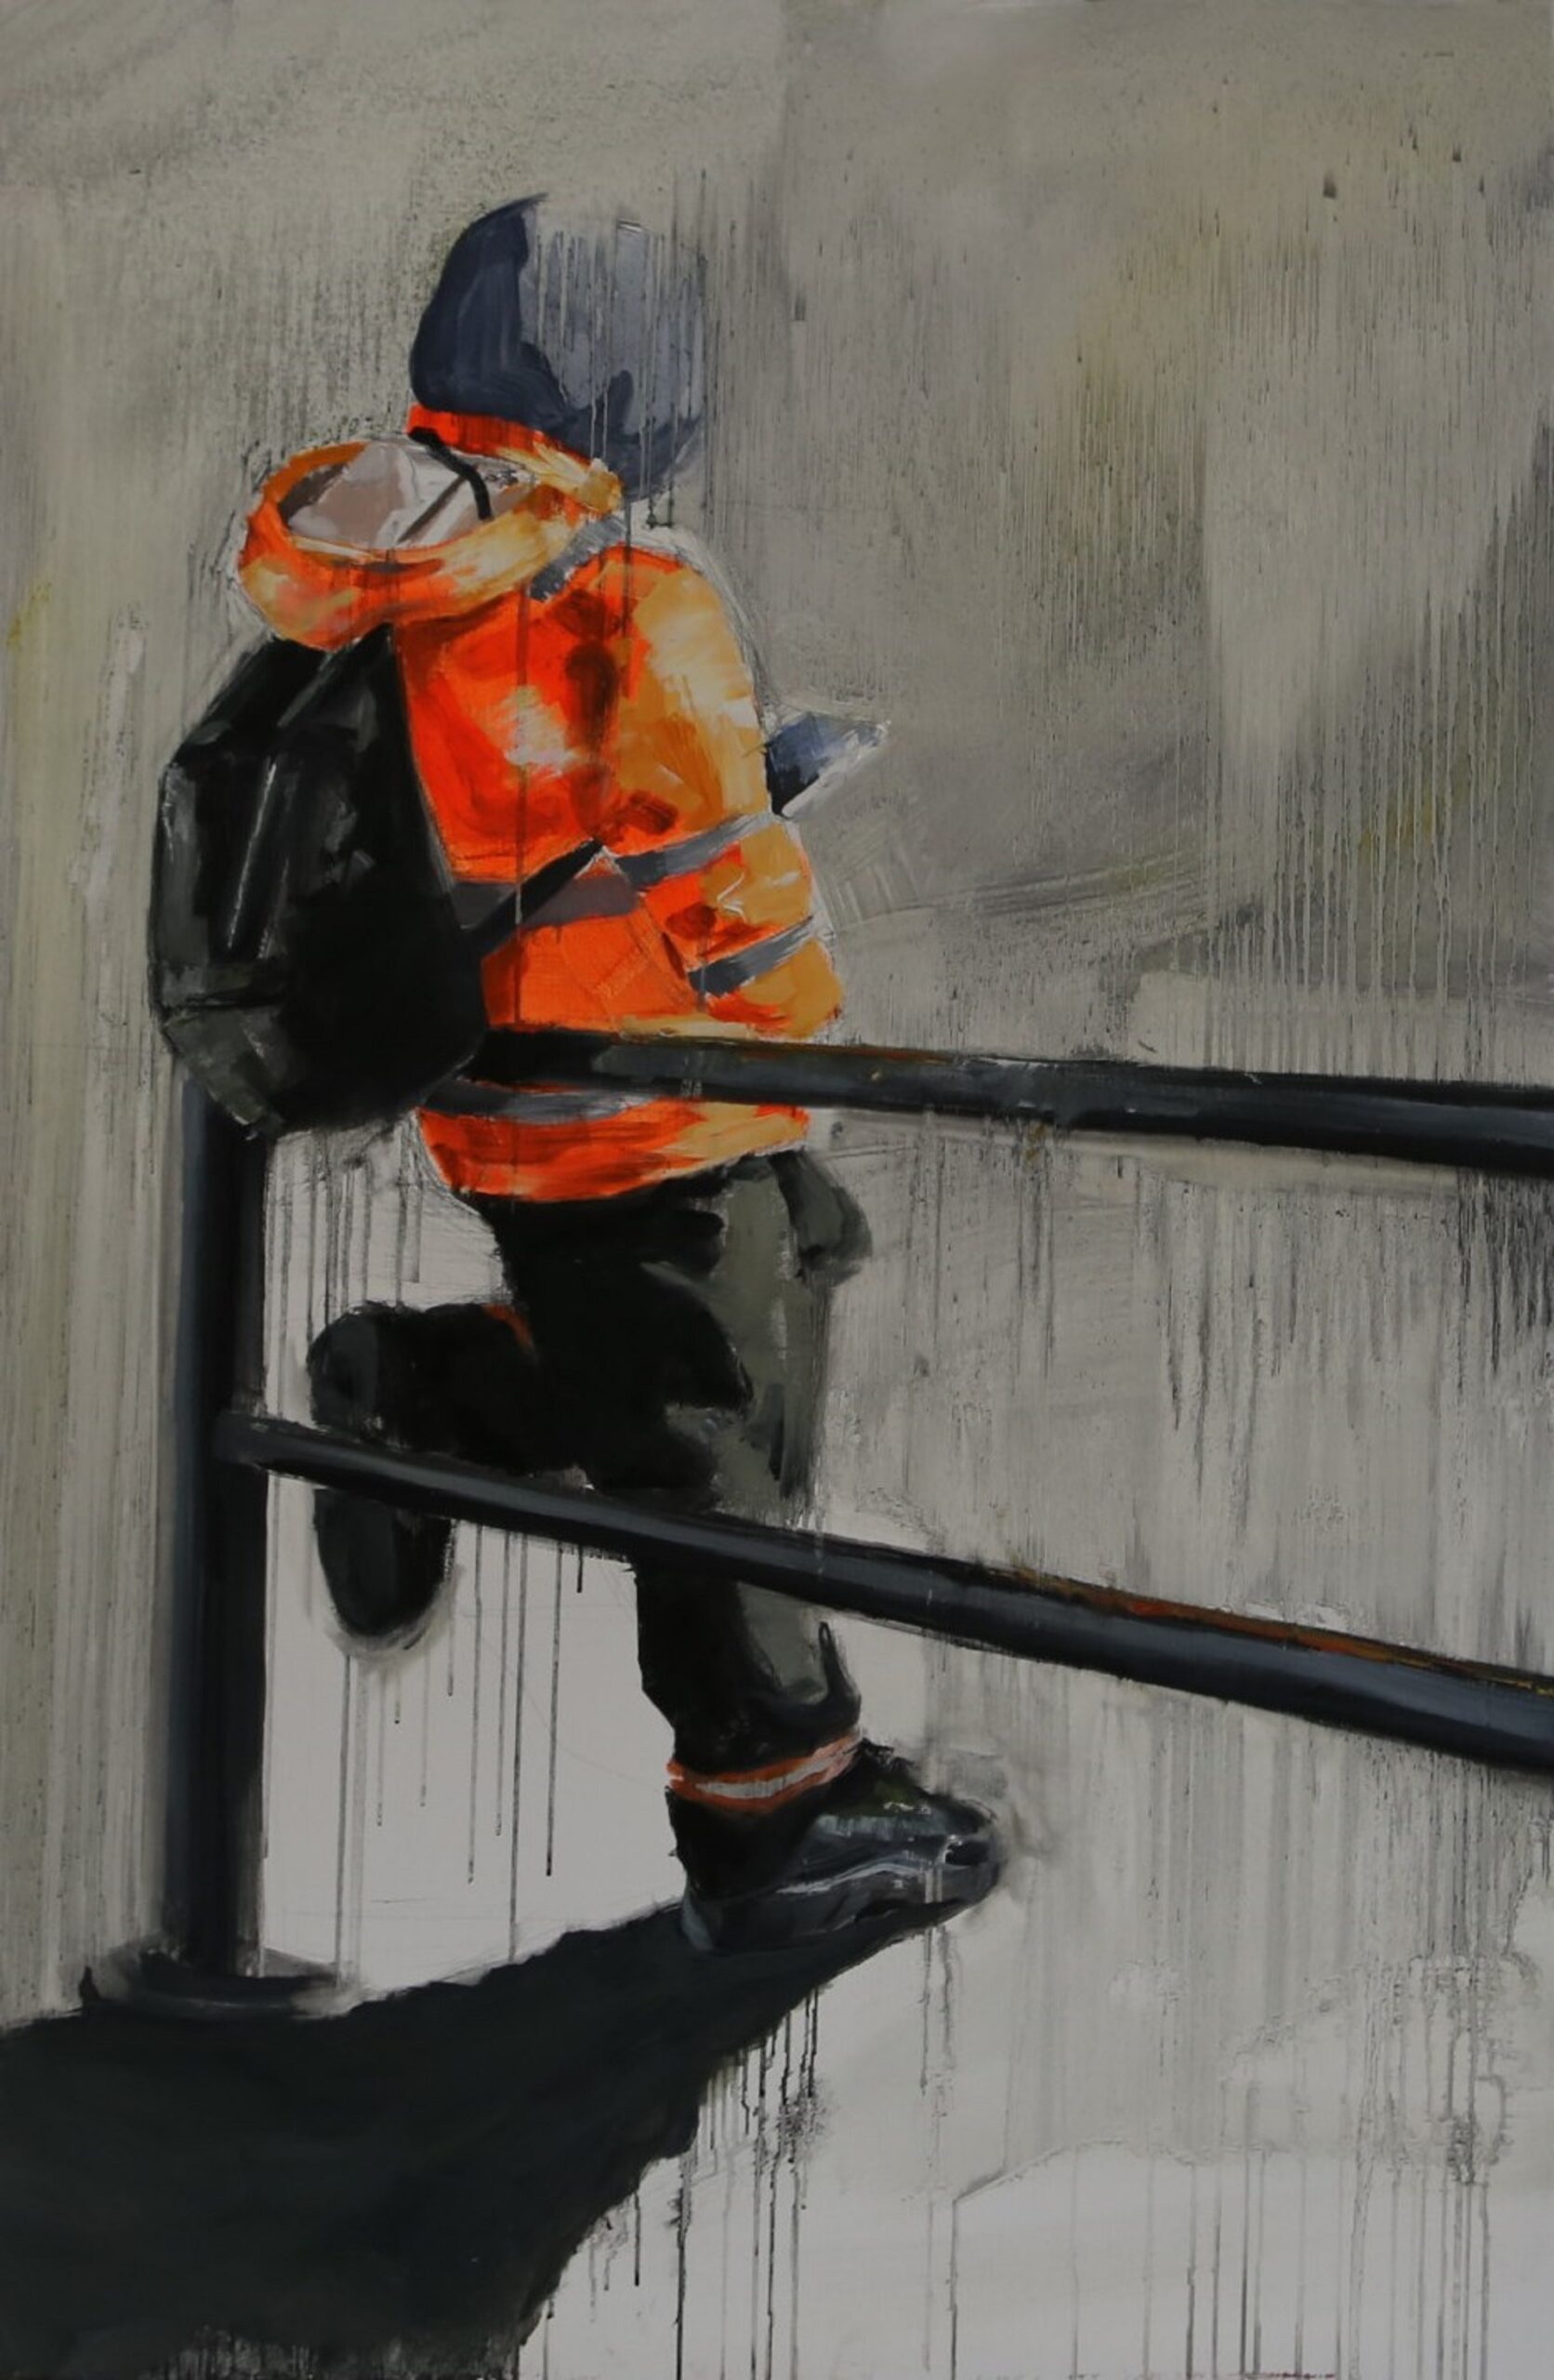 Obraz przedstawia postać opartą o czarną barierkę. Osoba ubrana jest w oranżową kurtkę i ma czarny plecak.